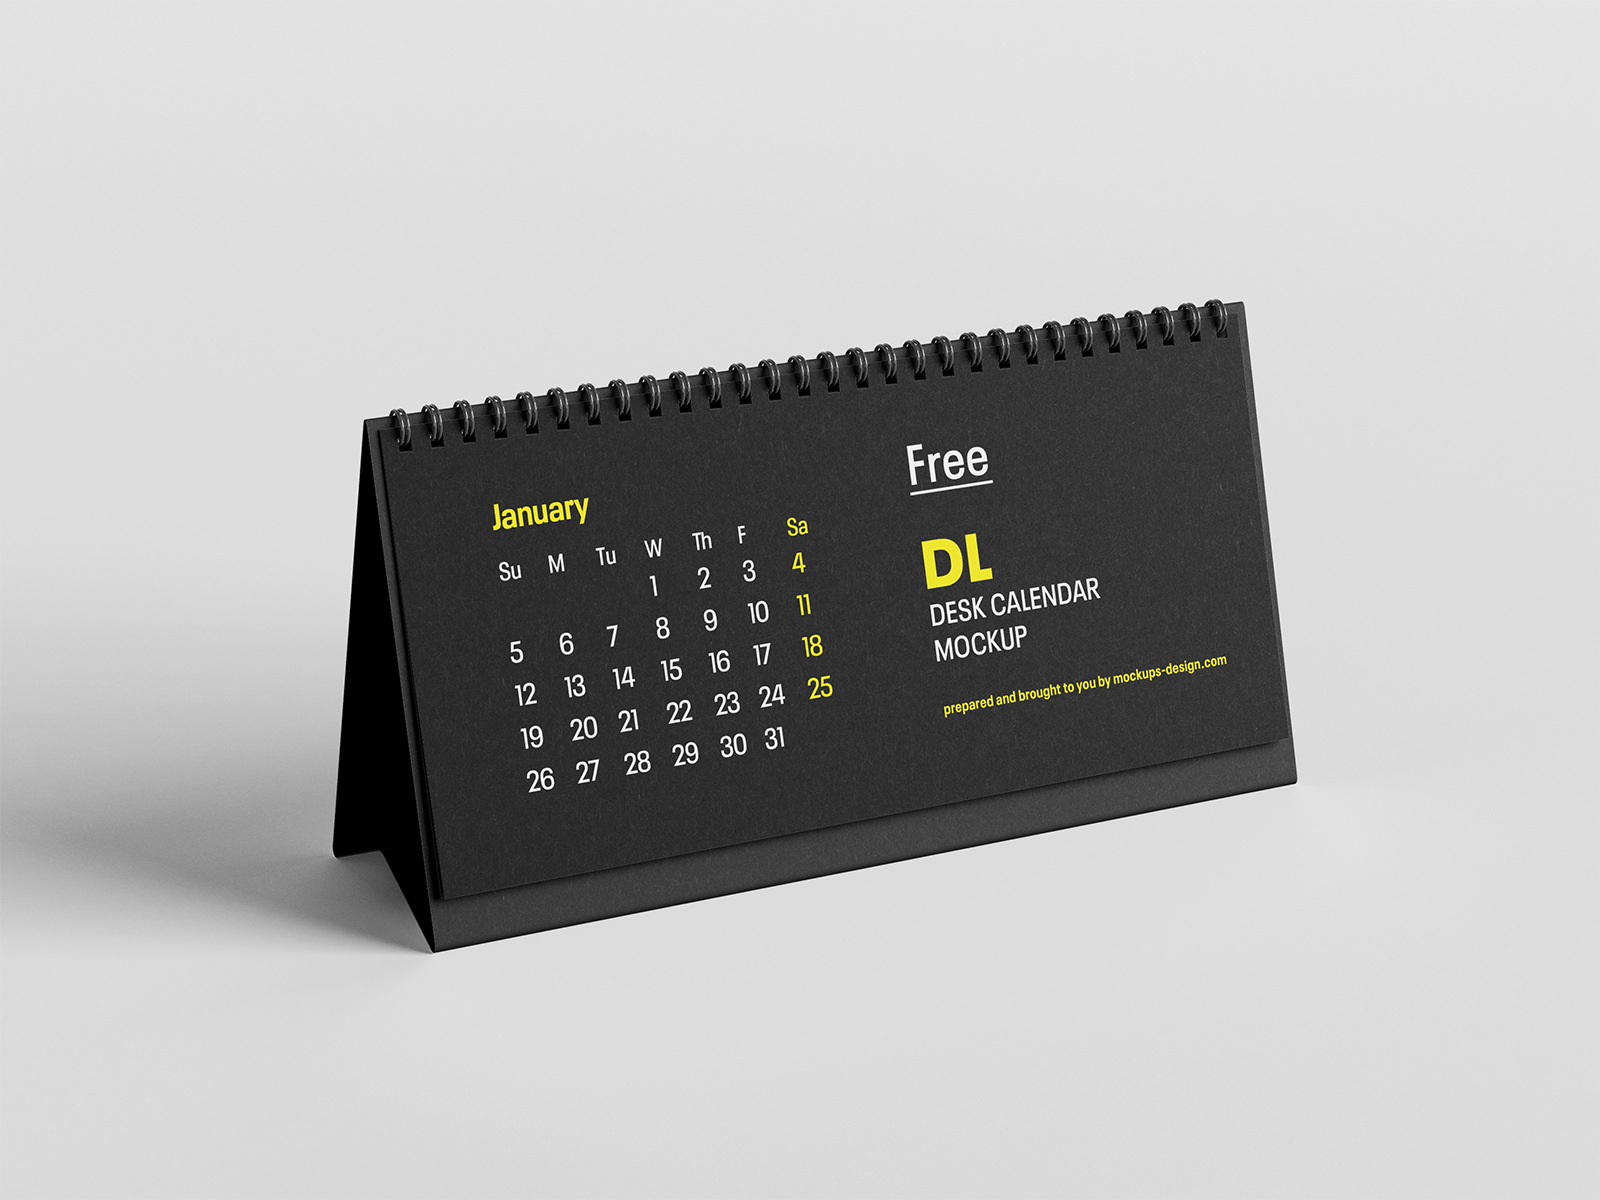 Free DL Desktop Calendar Mockup